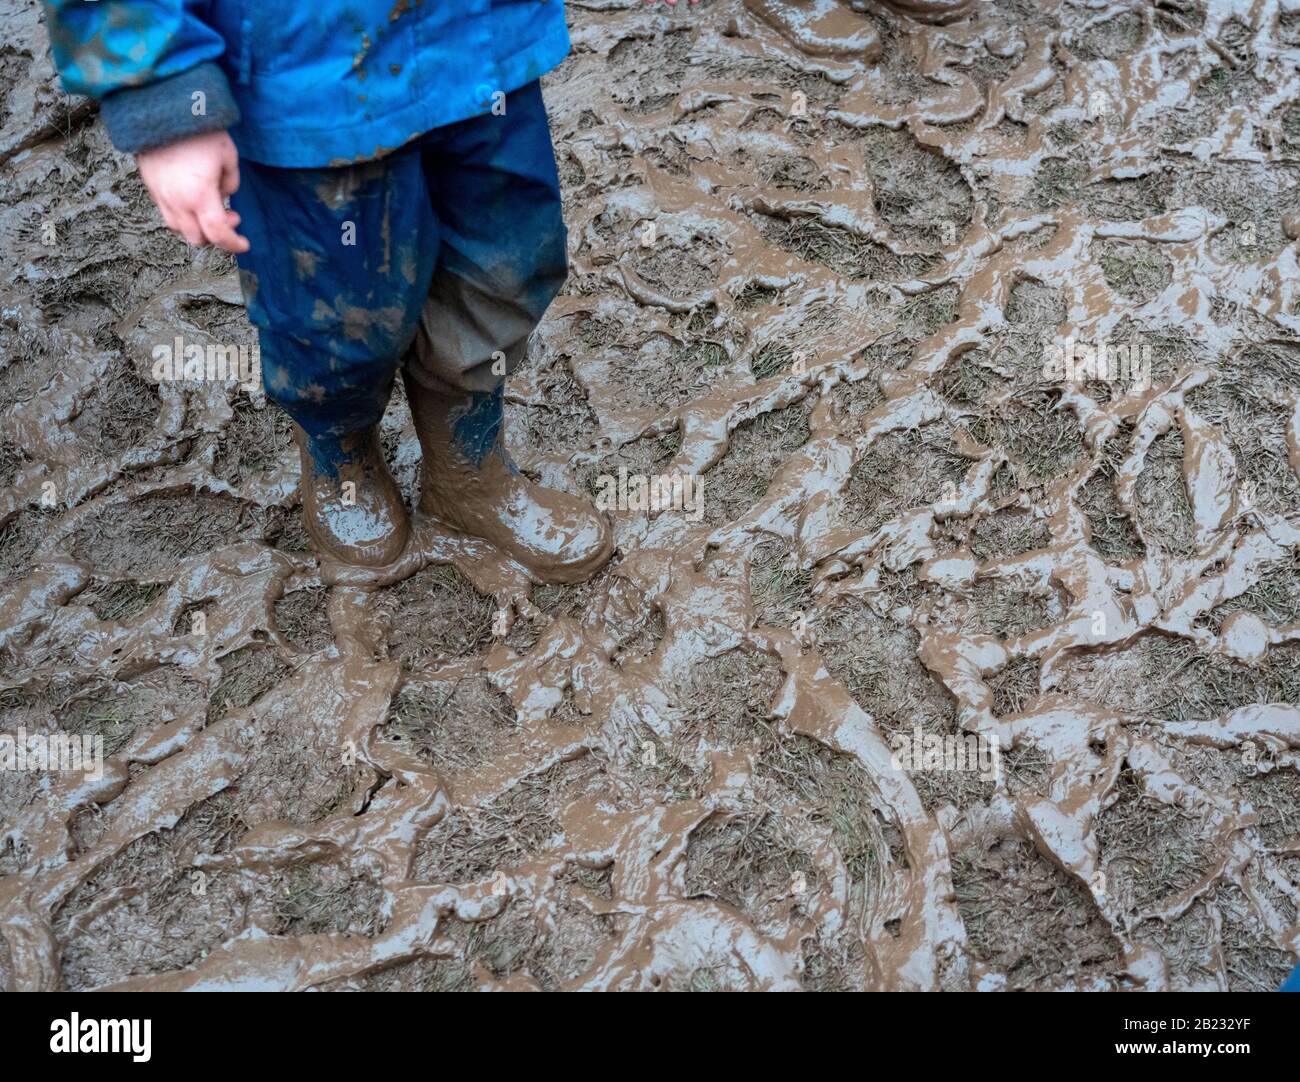 College Green pelouse réduite à un bain de boue après la grève scolaire Greta Thunberg et mars pour le climat par une journée humide en février 2020 Banque D'Images